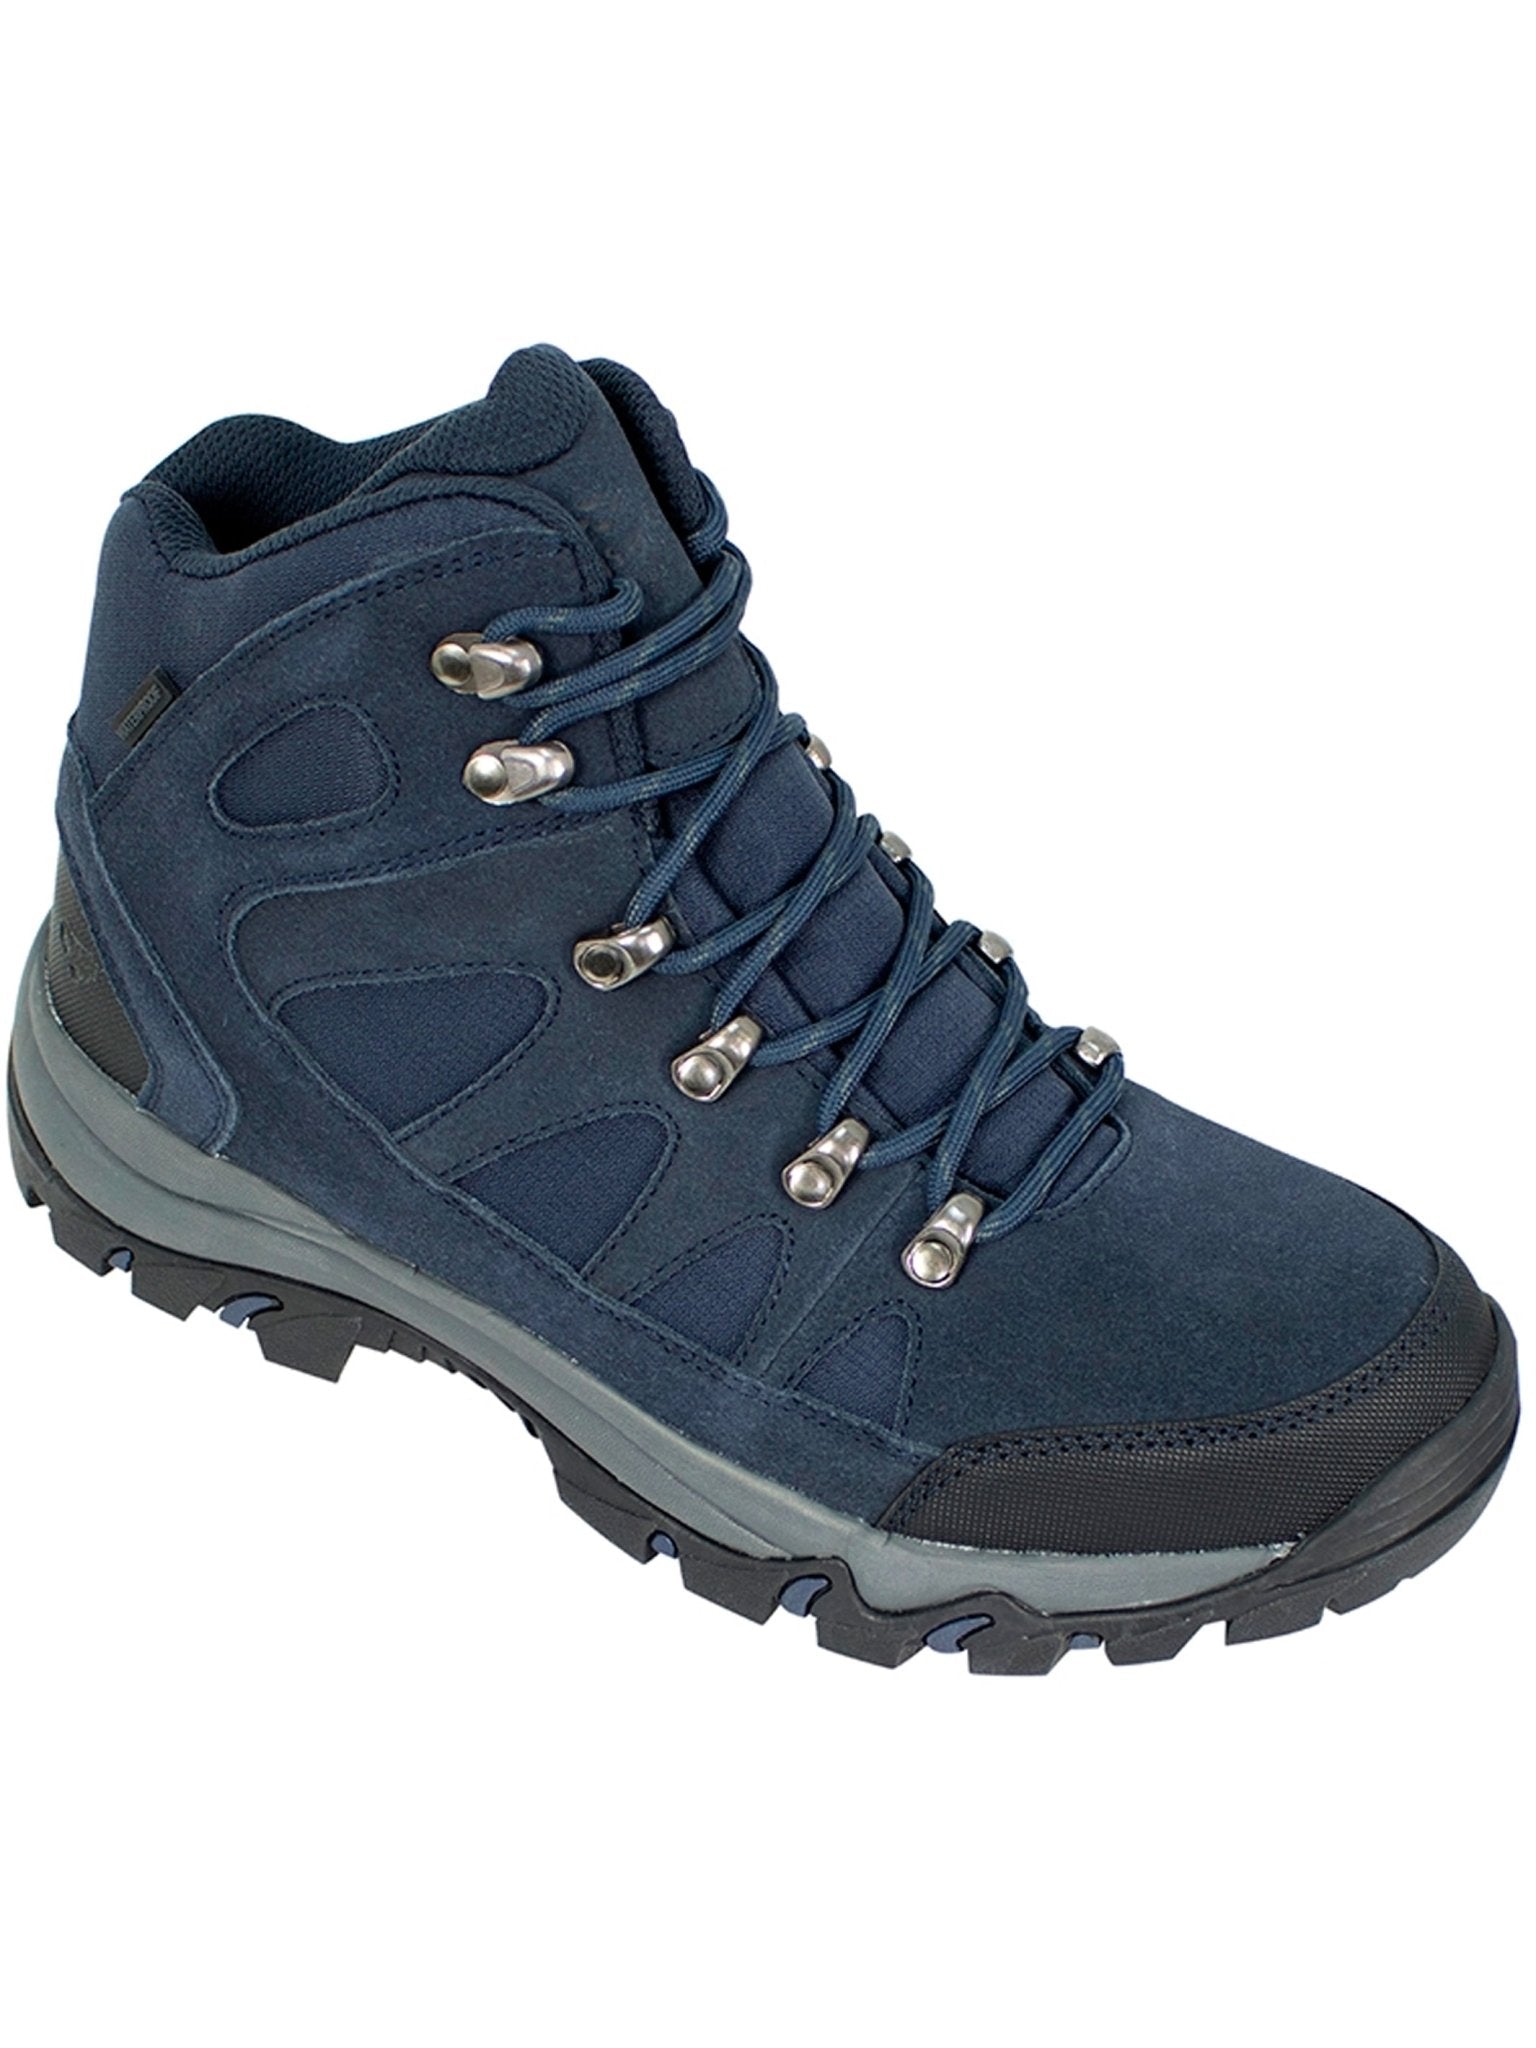 Hoggs of Fife Hoggs Of Fife - Nevis Waterproof Outdoor Hiking / Trail Boot / waterproof walking shoe Boots